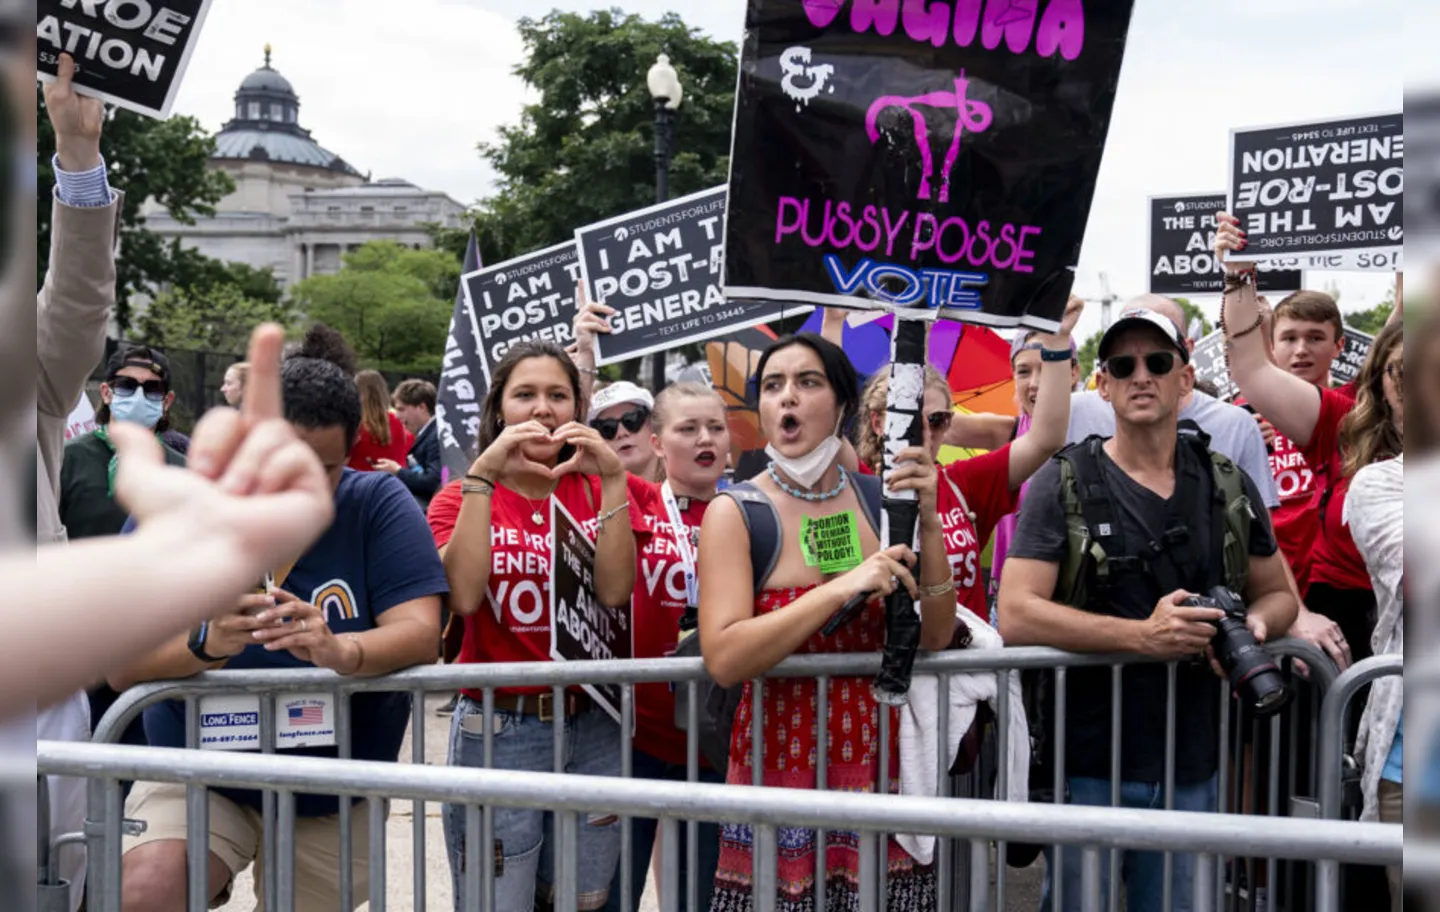 Mulheres protestam contra evogação do direito ao aborto nos Estados Unidos